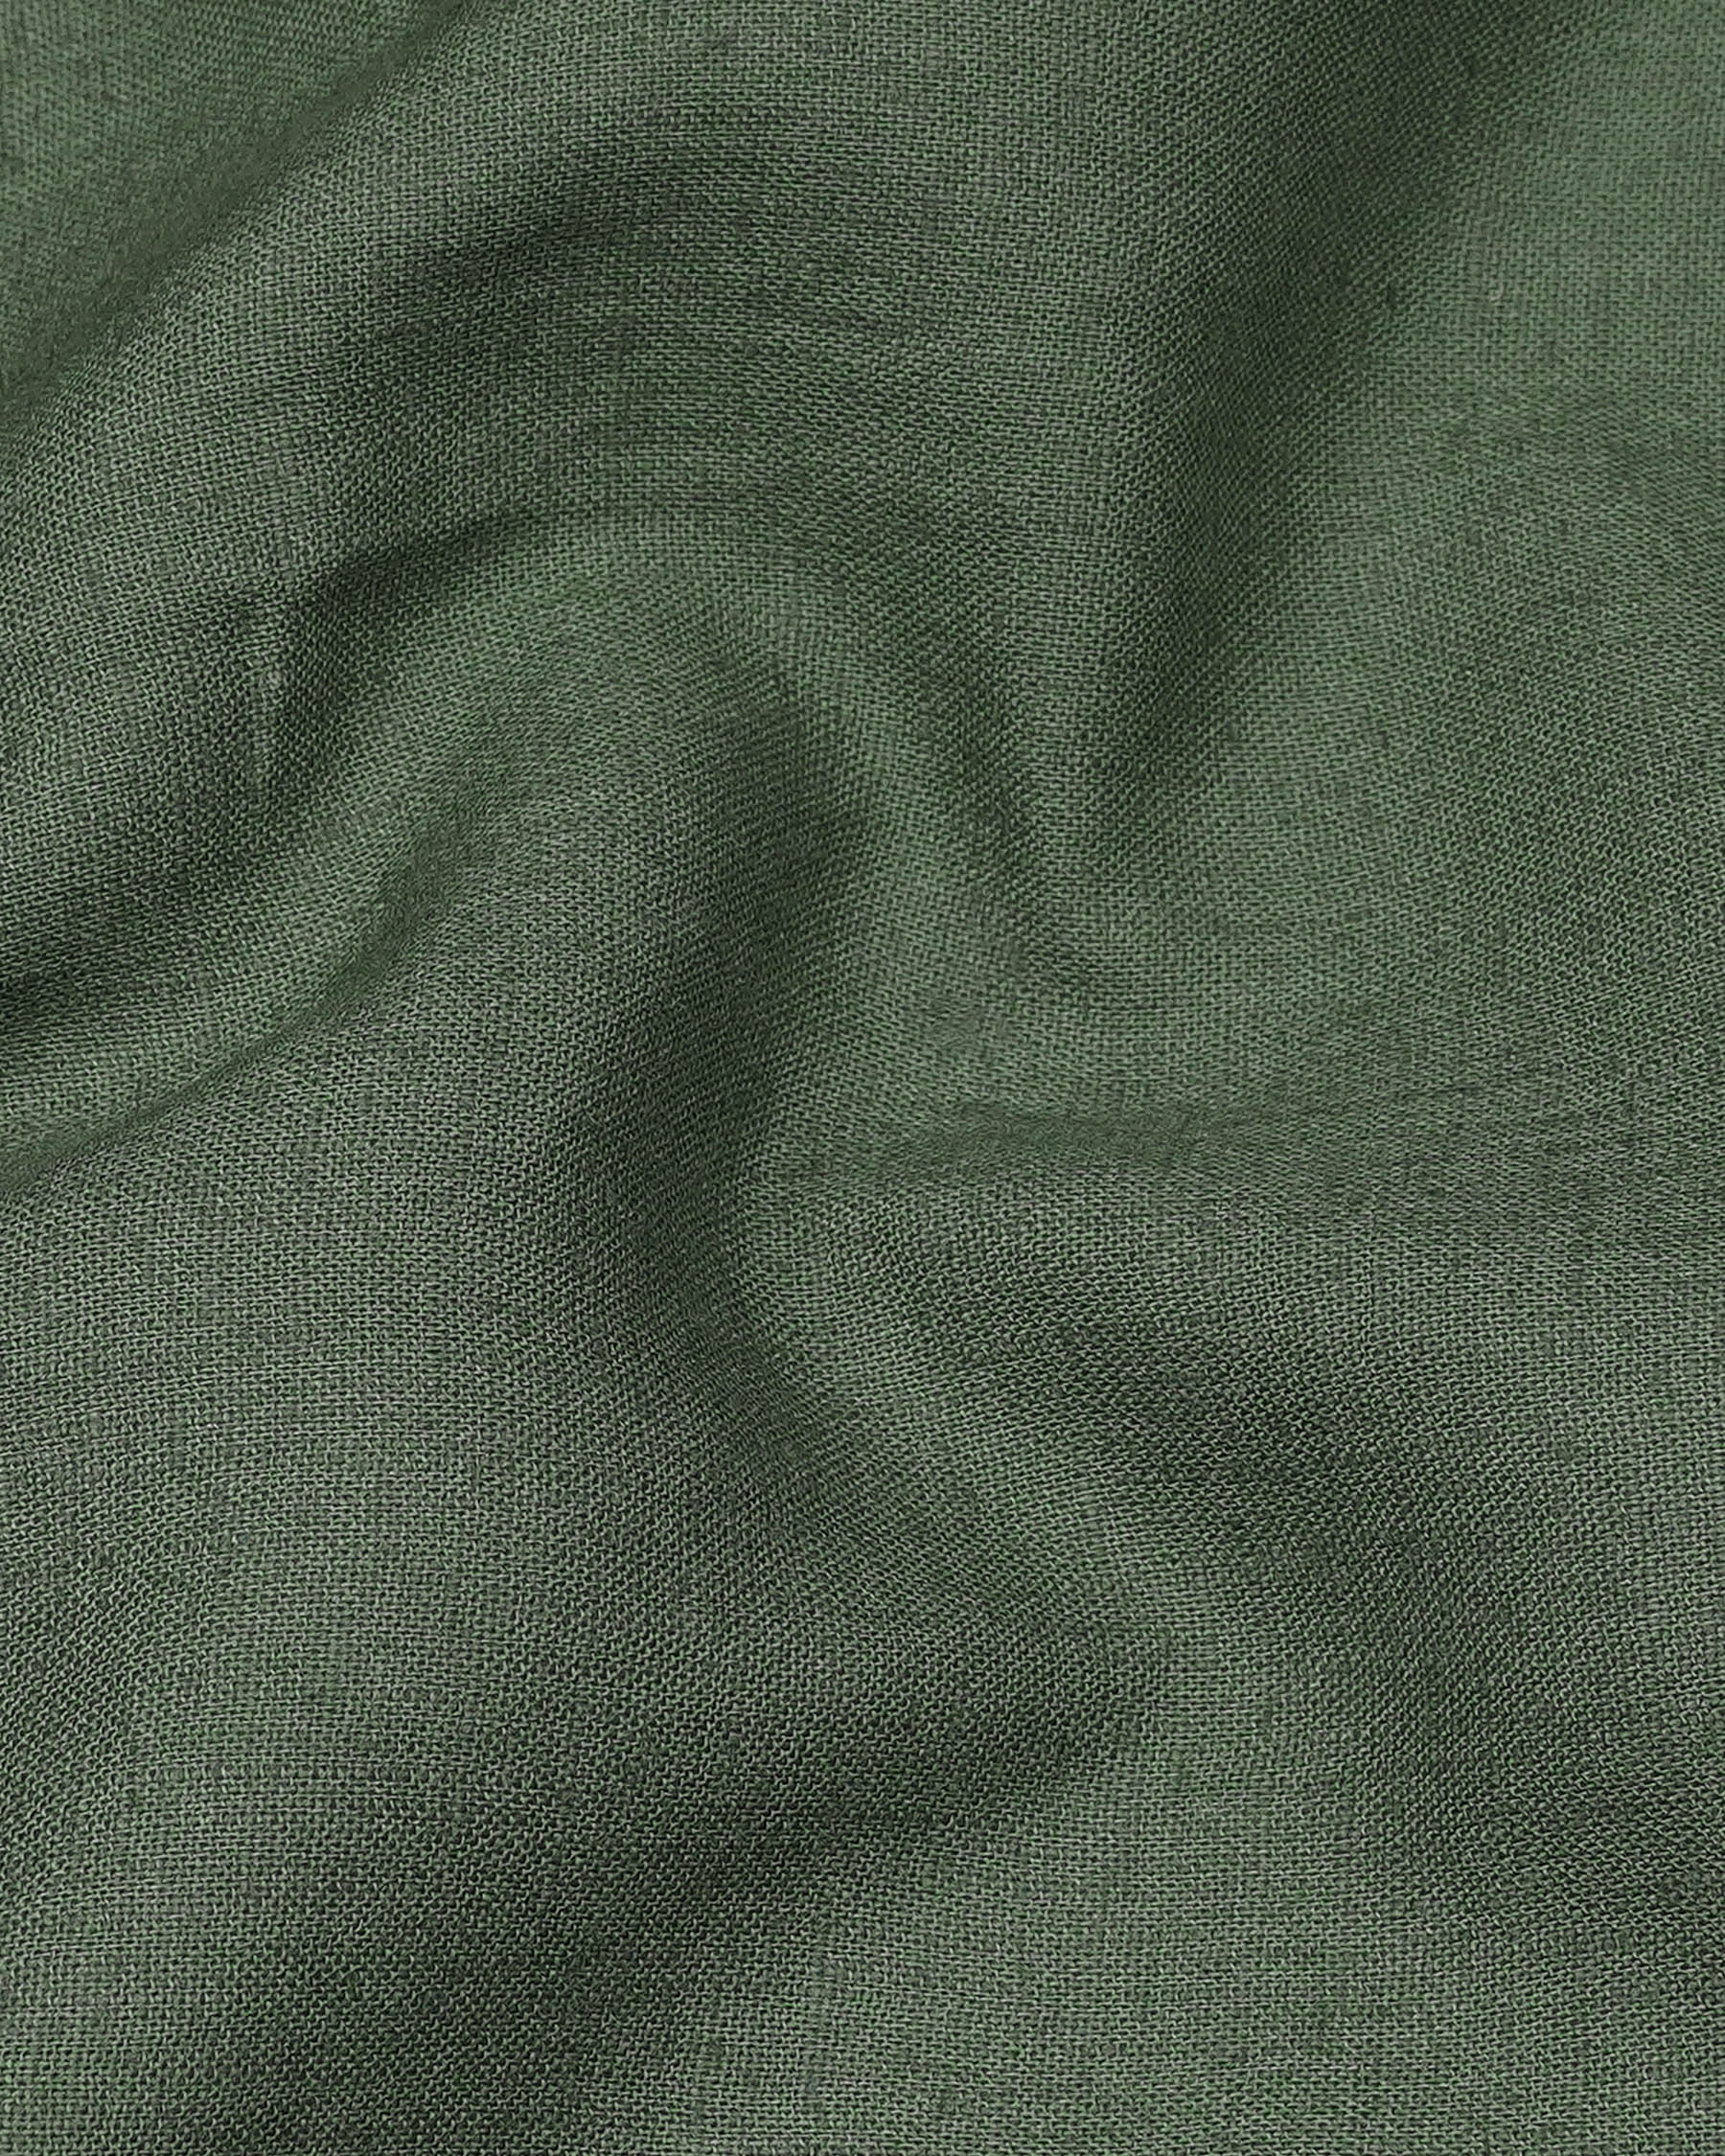 Finch Green Luxurious Linen Shirt 7897-BLK -38,7897-BLK -H-38,7897-BLK -39,7897-BLK -H-39,7897-BLK -40,7897-BLK -H-40,7897-BLK -42,7897-BLK -H-42,7897-BLK -44,7897-BLK -H-44,7897-BLK -46,7897-BLK -H-46,7897-BLK -48,7897-BLK -H-48,7897-BLK -50,7897-BLK -H-50,7897-BLK -52,7897-BLK -H-52